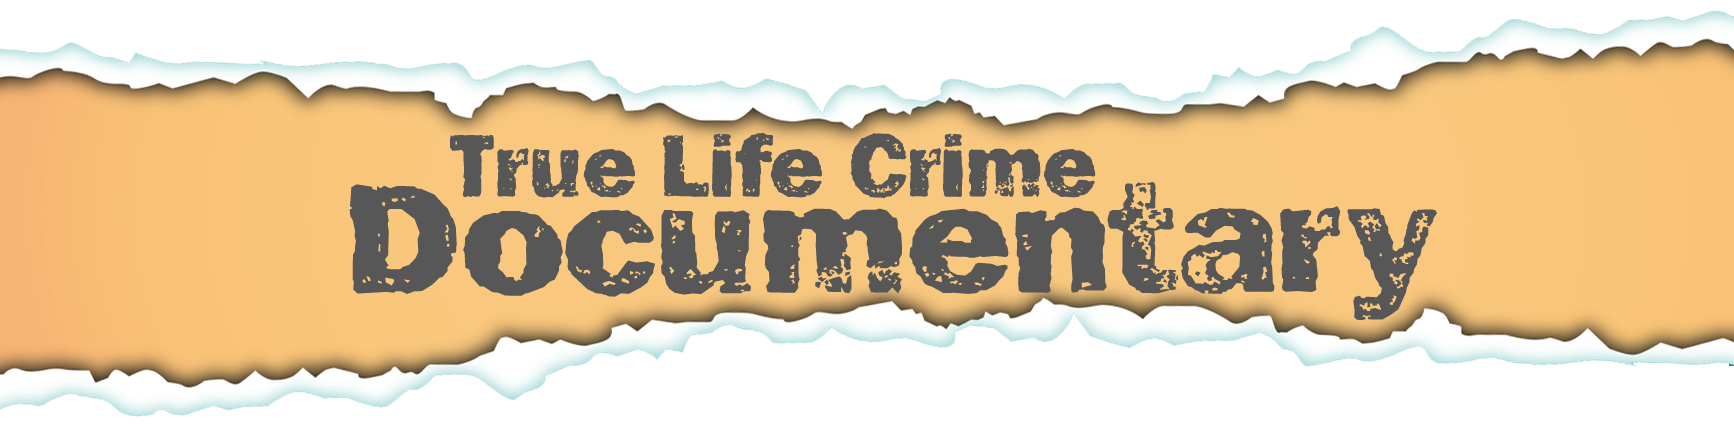 James brindley Foundation True Life Crime UK